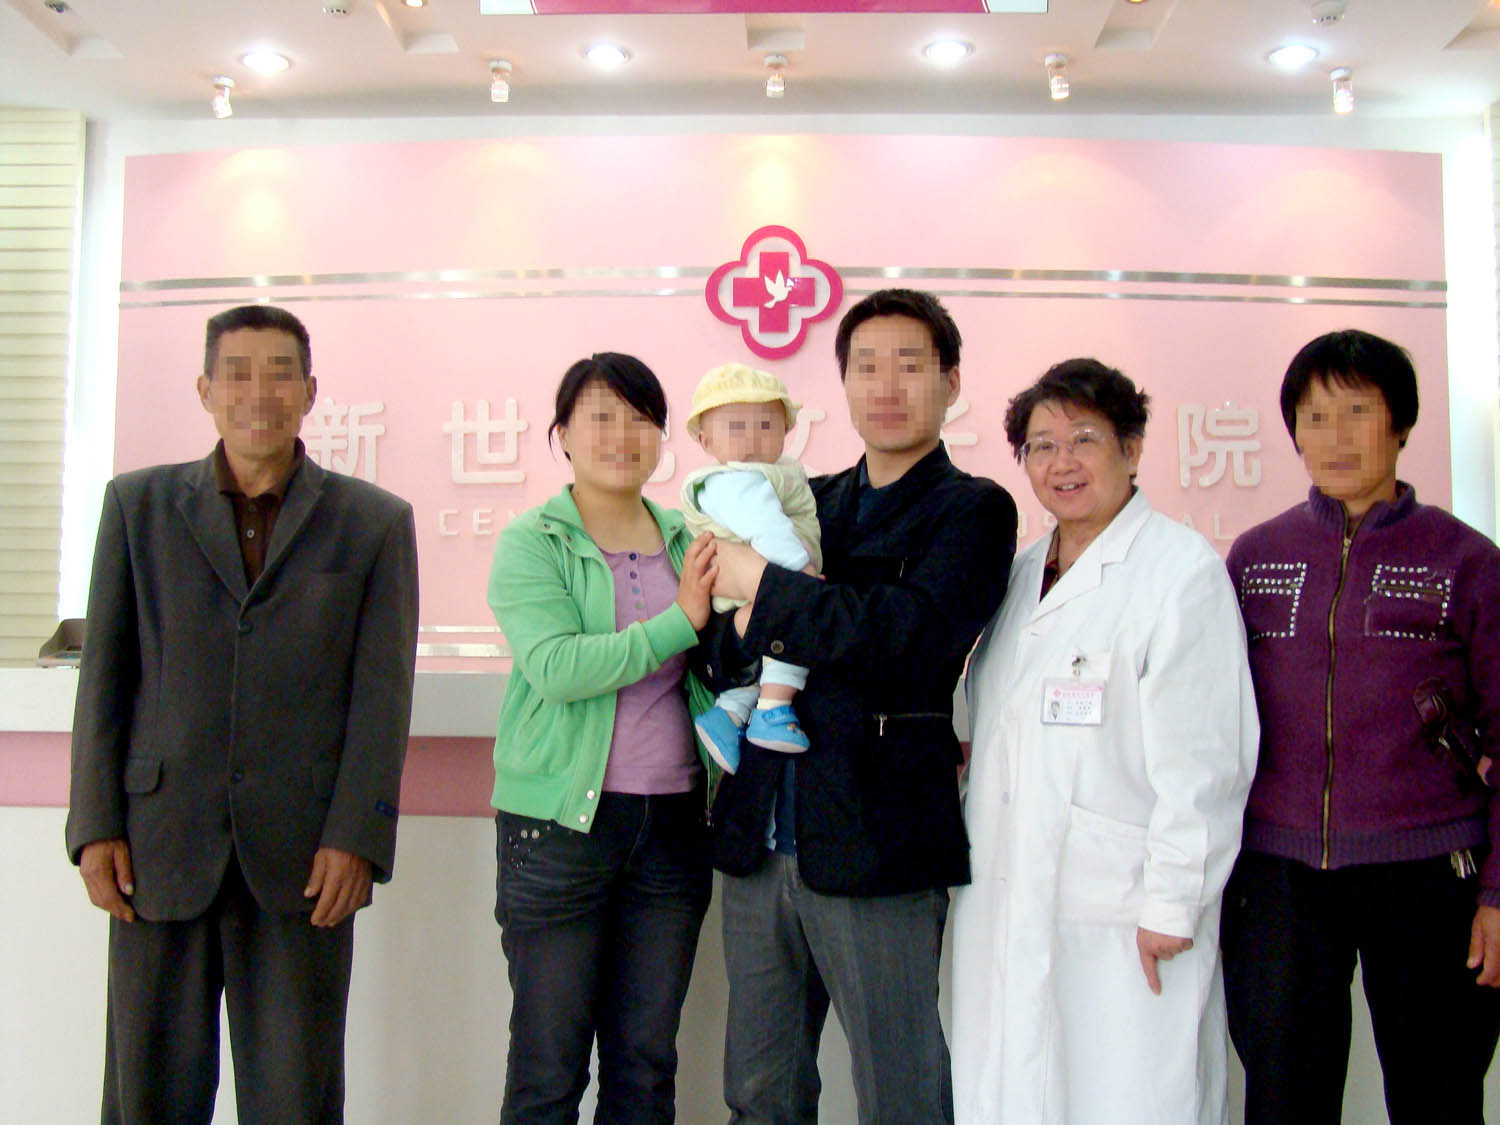 我院首席不孕不育医生徐佩安教授与患者一家人合影留念